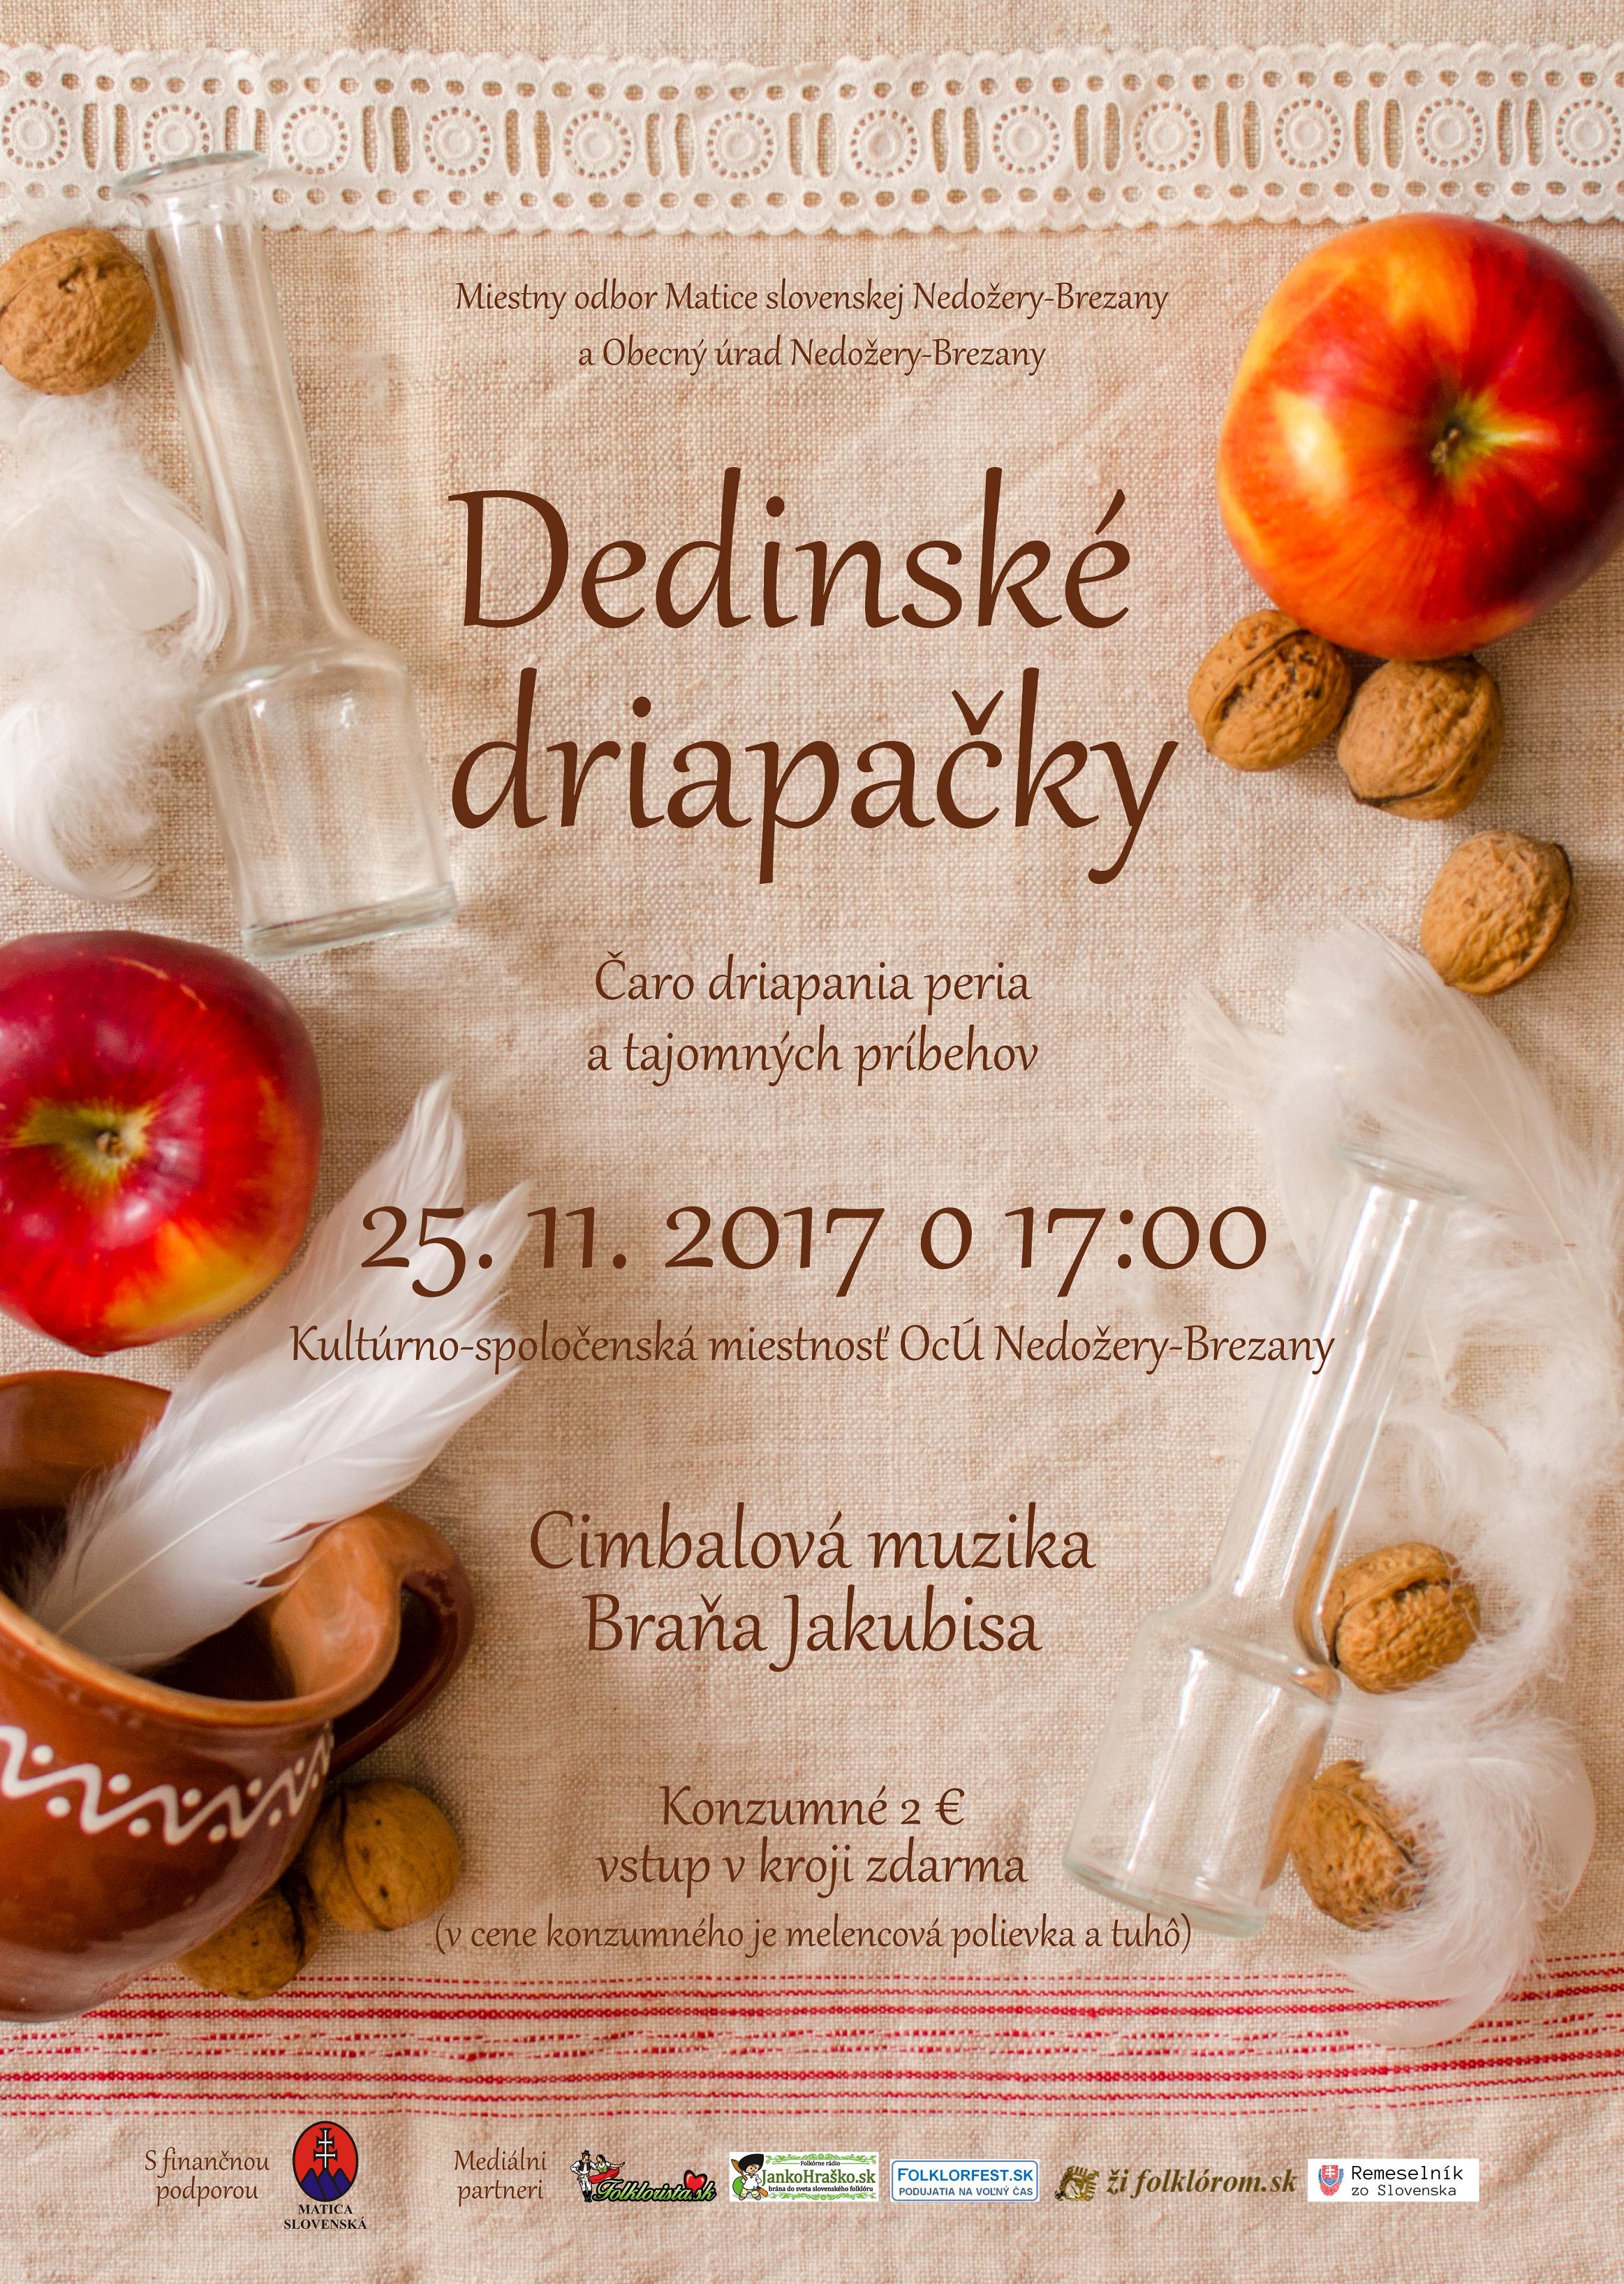 Dedinsk driapaky Nedoery-Brezany 2017  4. ronk